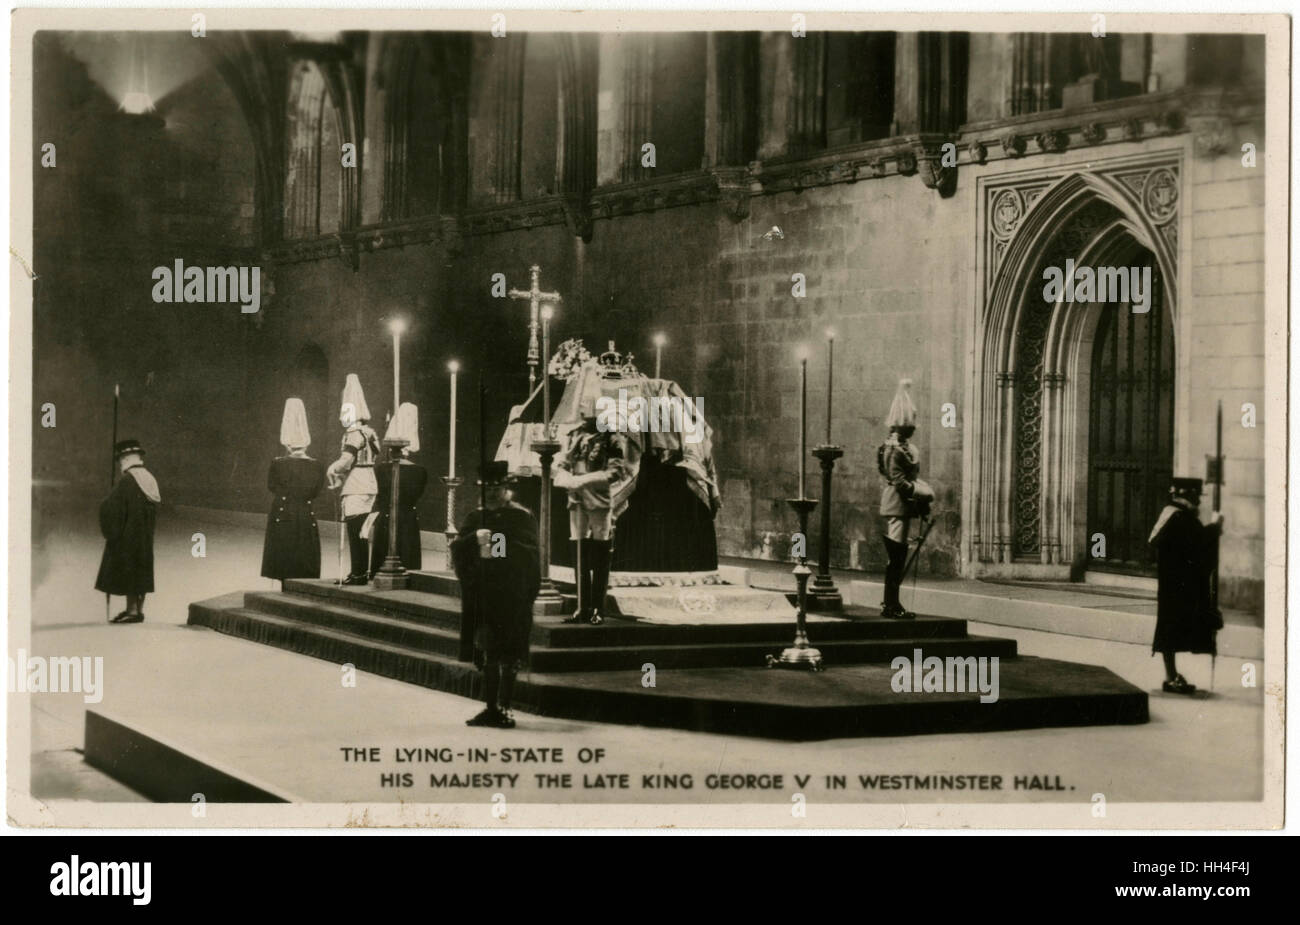 Verstorbenen Majestät, König George auf-in-Zustand in Westminster Hall, London, für die vier Tage. Um die Royal Wache Sarg auf ihrer Estrade isoliert inmitten der weiten Räume der Stille wachen über ihre Toten Sovereign Januar 1936. Stockfoto